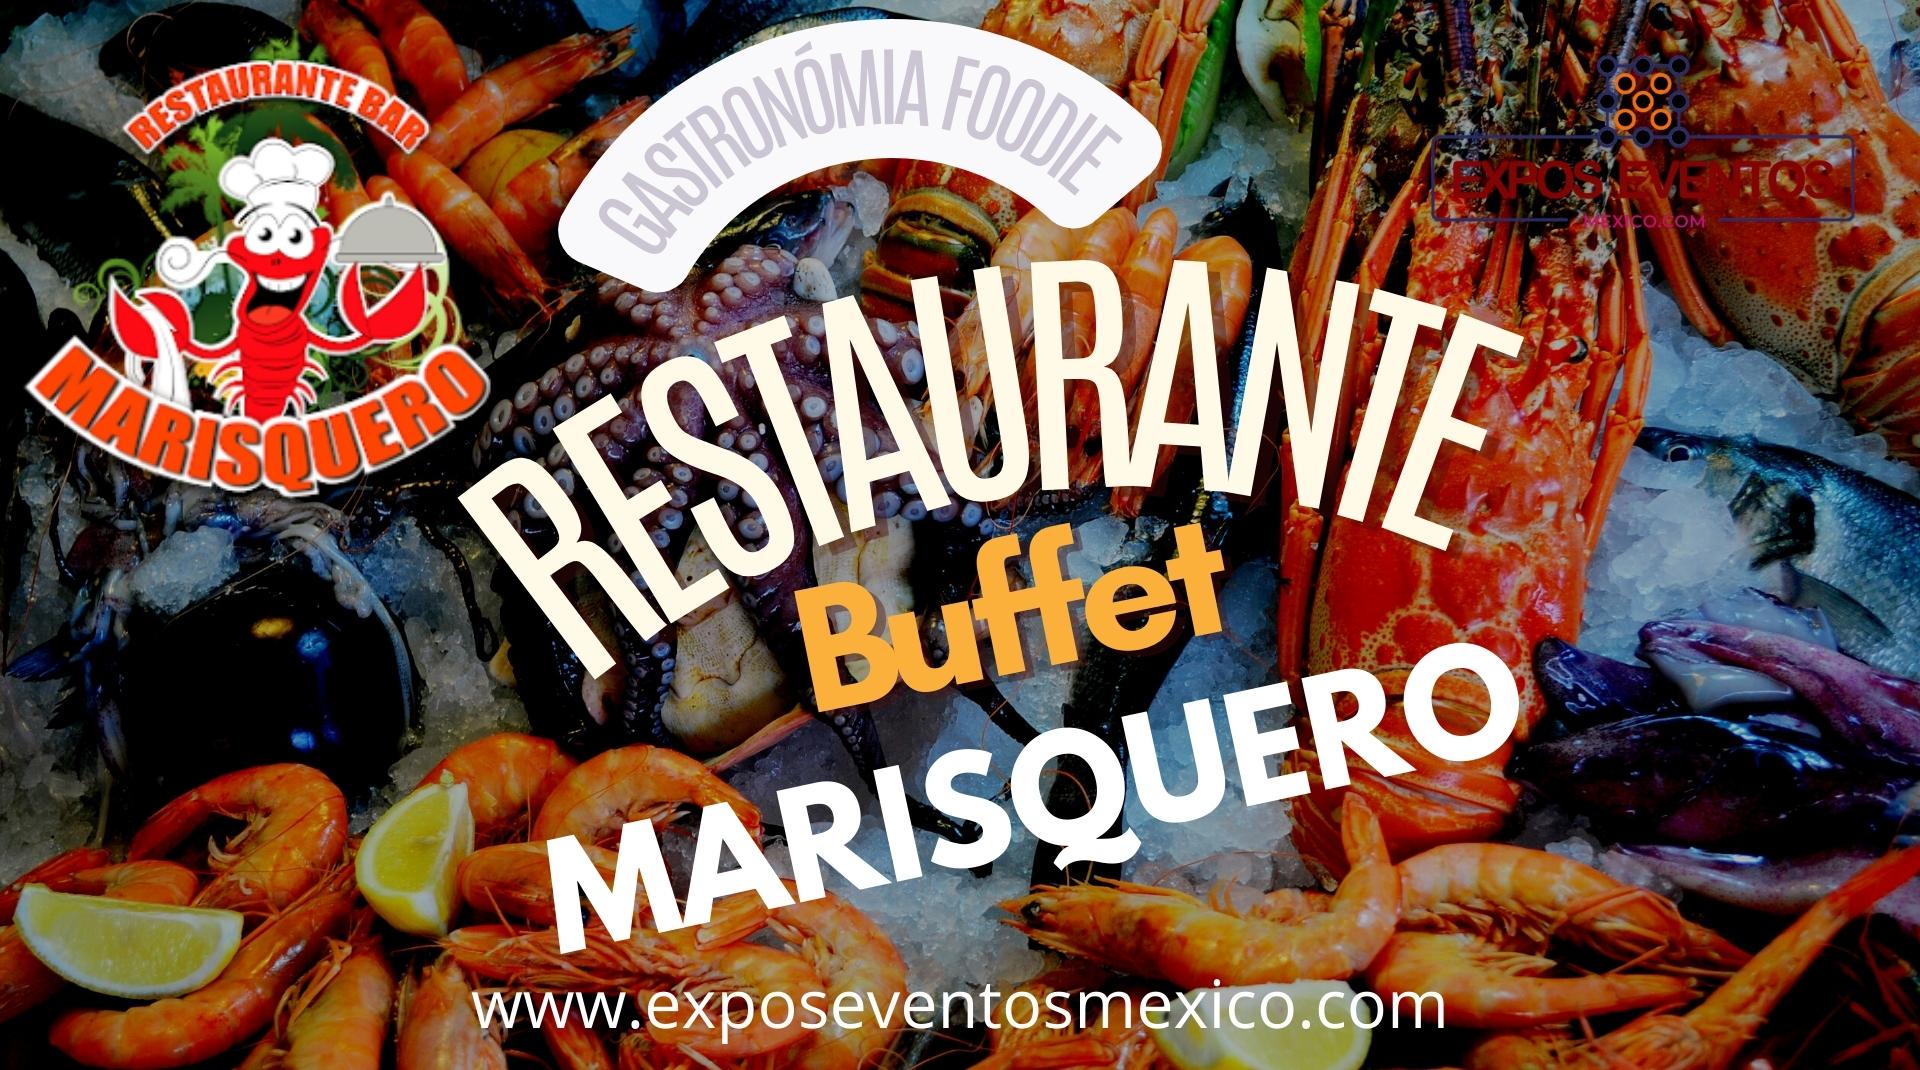 Restaurante Bar Marisquero Buffet de Mariscos en Calzada Miramontes CDMX